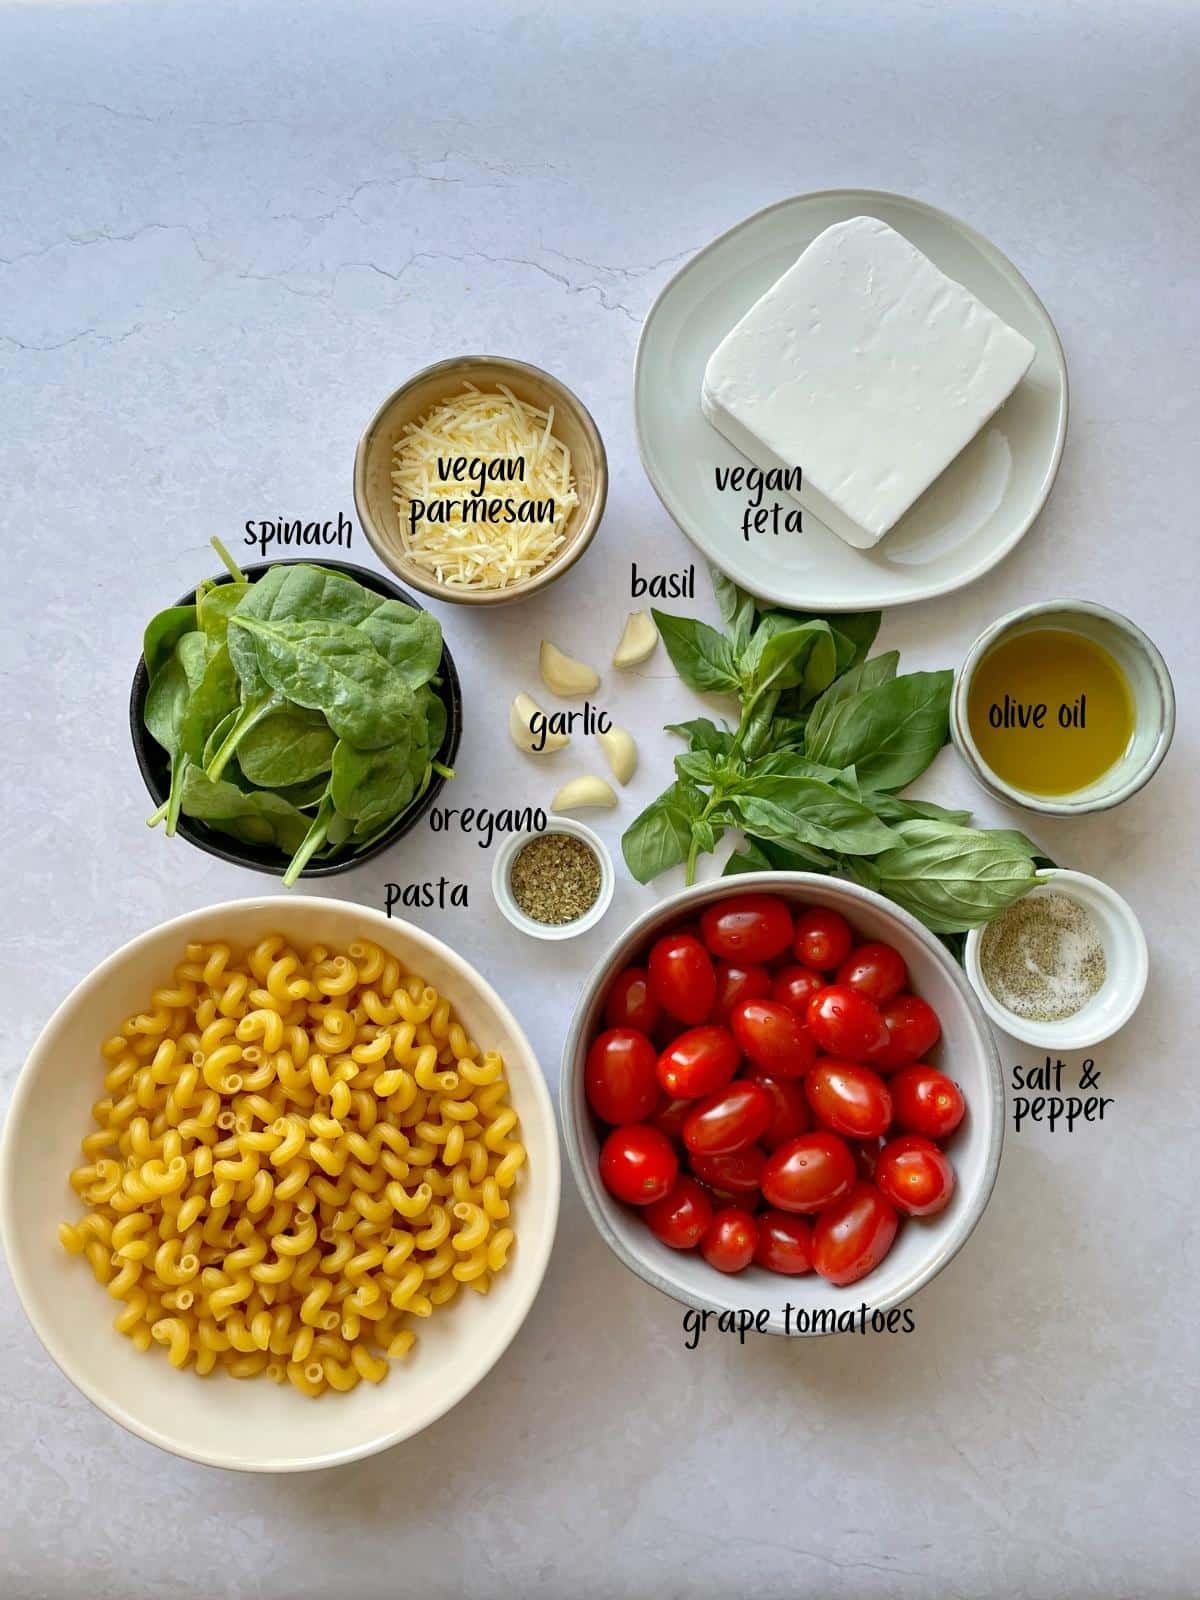 Labeled feta pasta ingredients.